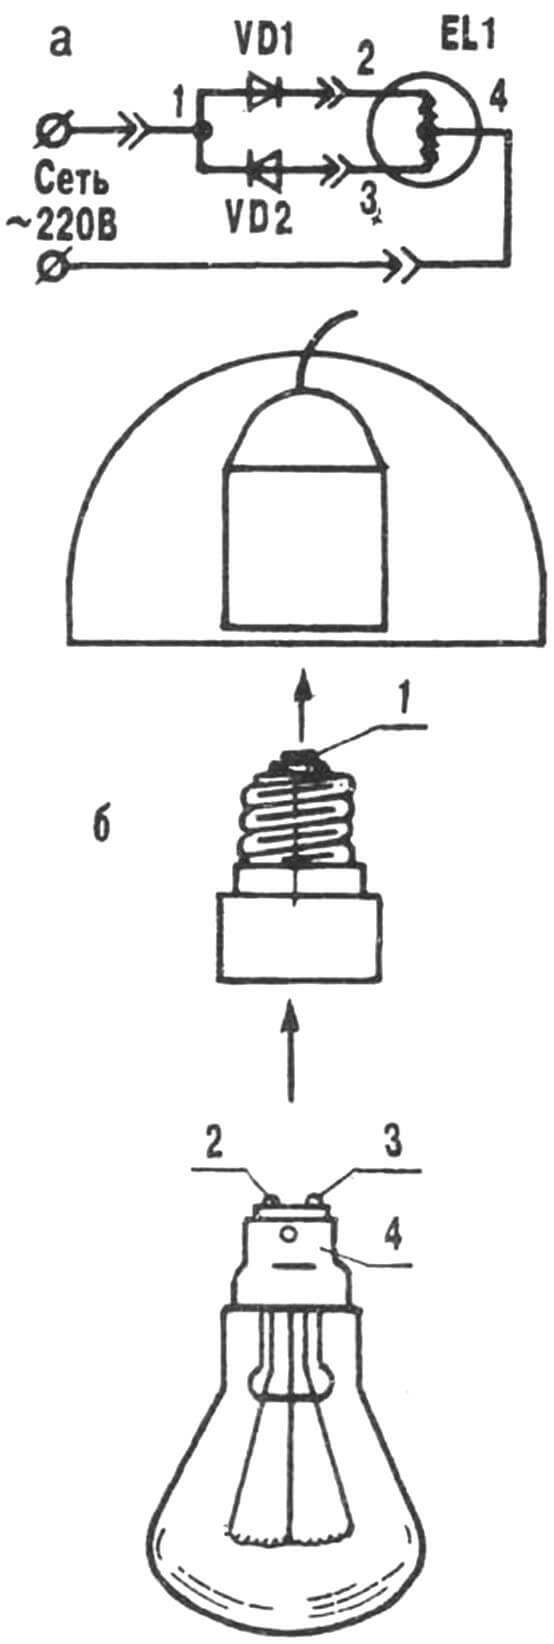 Электролампа с отводом от середины нити накала и с диодным преобразователем (встроен в переходник)